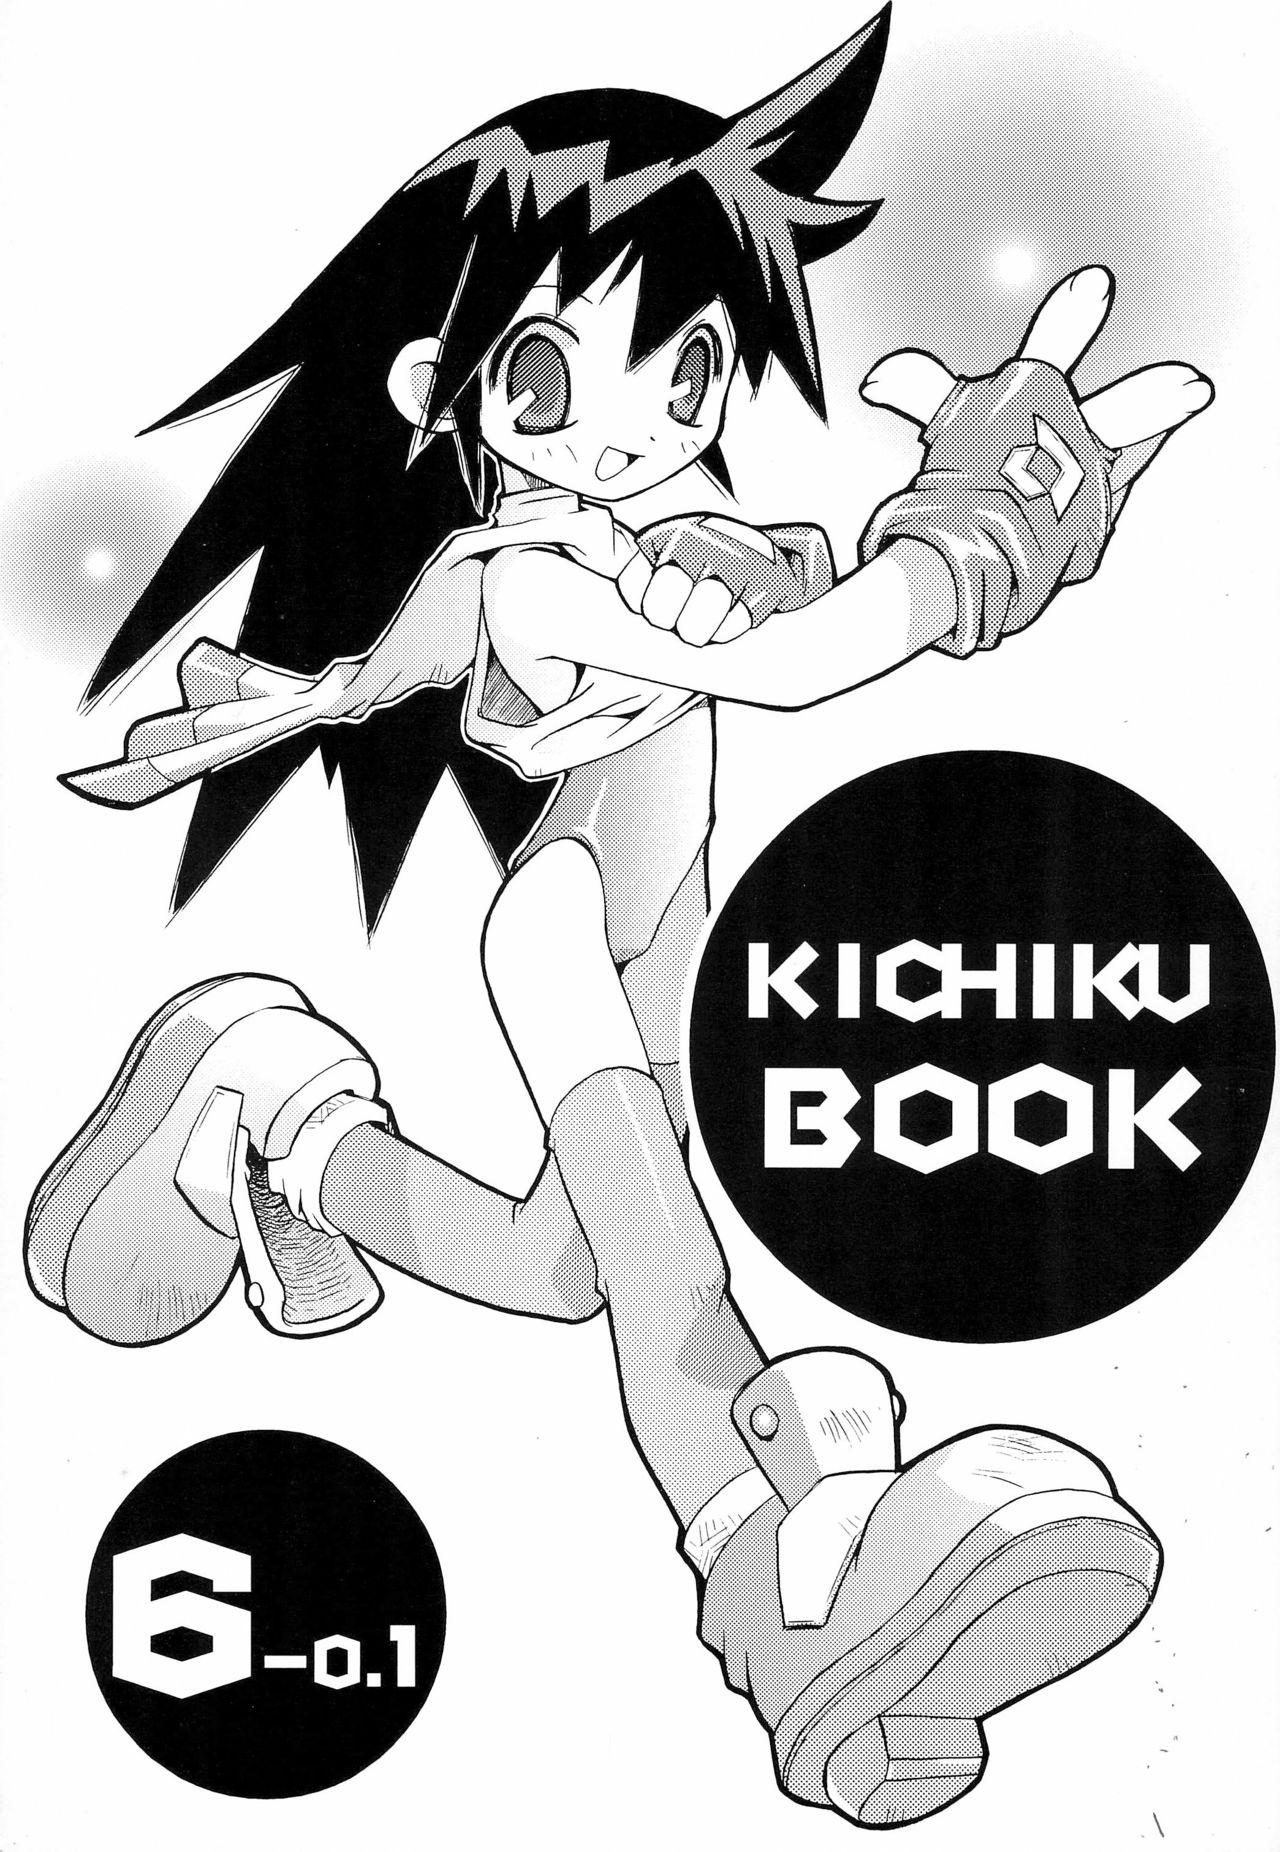 KICHIKU BOOK 6-0.1 0